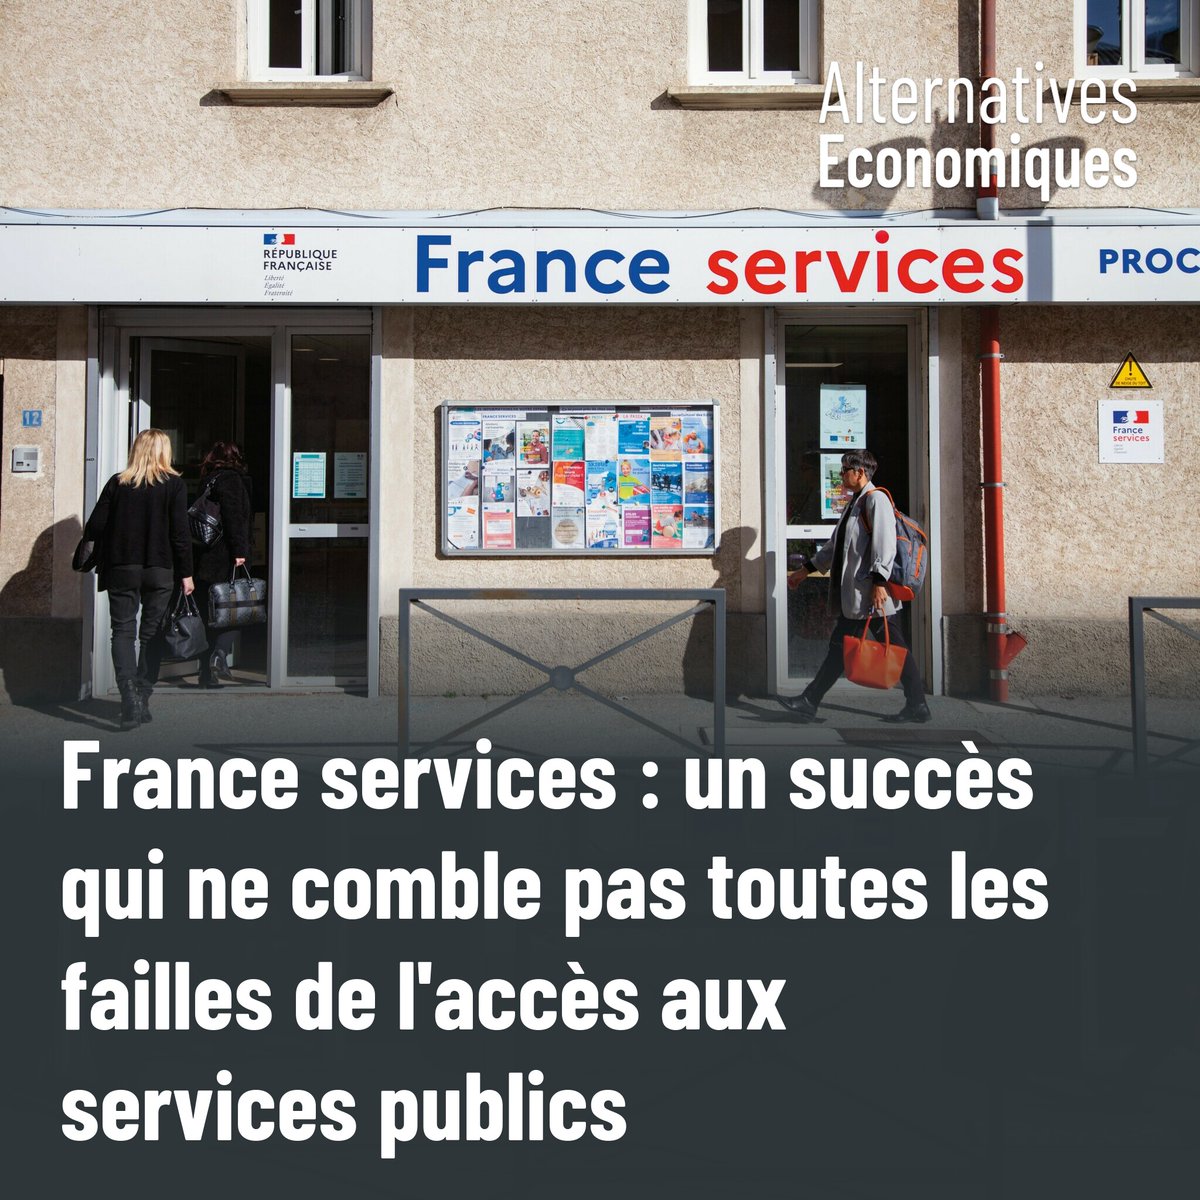 Le programme France services offre un accompagnement humain, partout sur le territoire, pour les démarches administratives du quotidien. Mais il suscite aussi des interrogations.
➡️ altereco.media/gUW